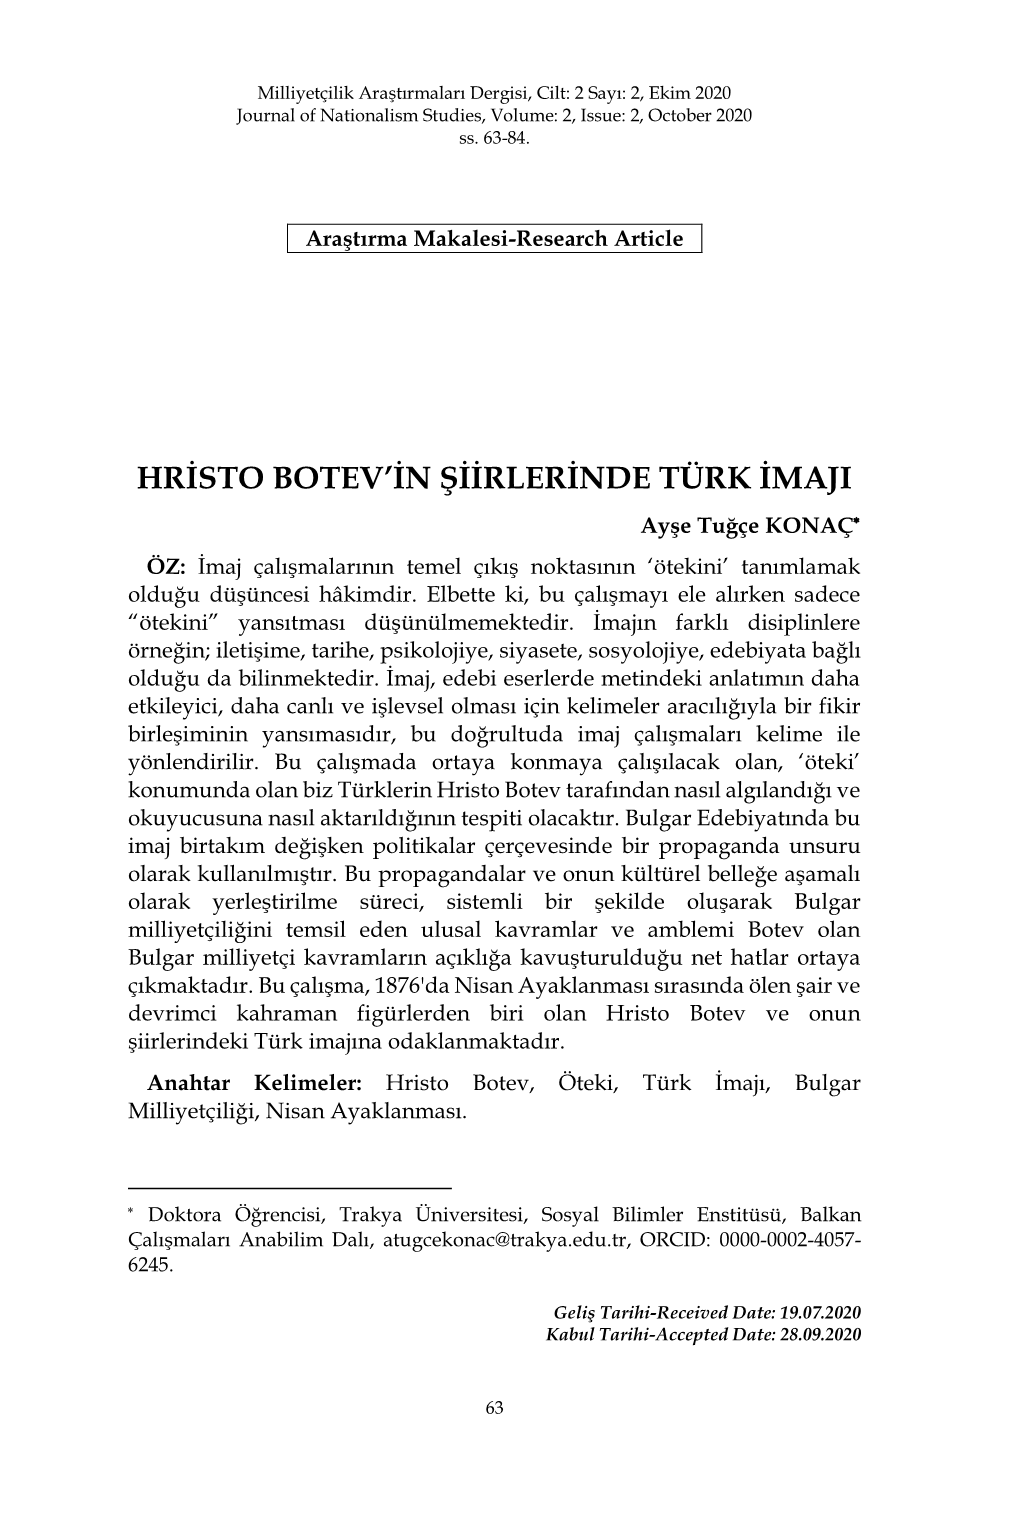 Hristo Botev'in Şiirlerinde Türk Imaji